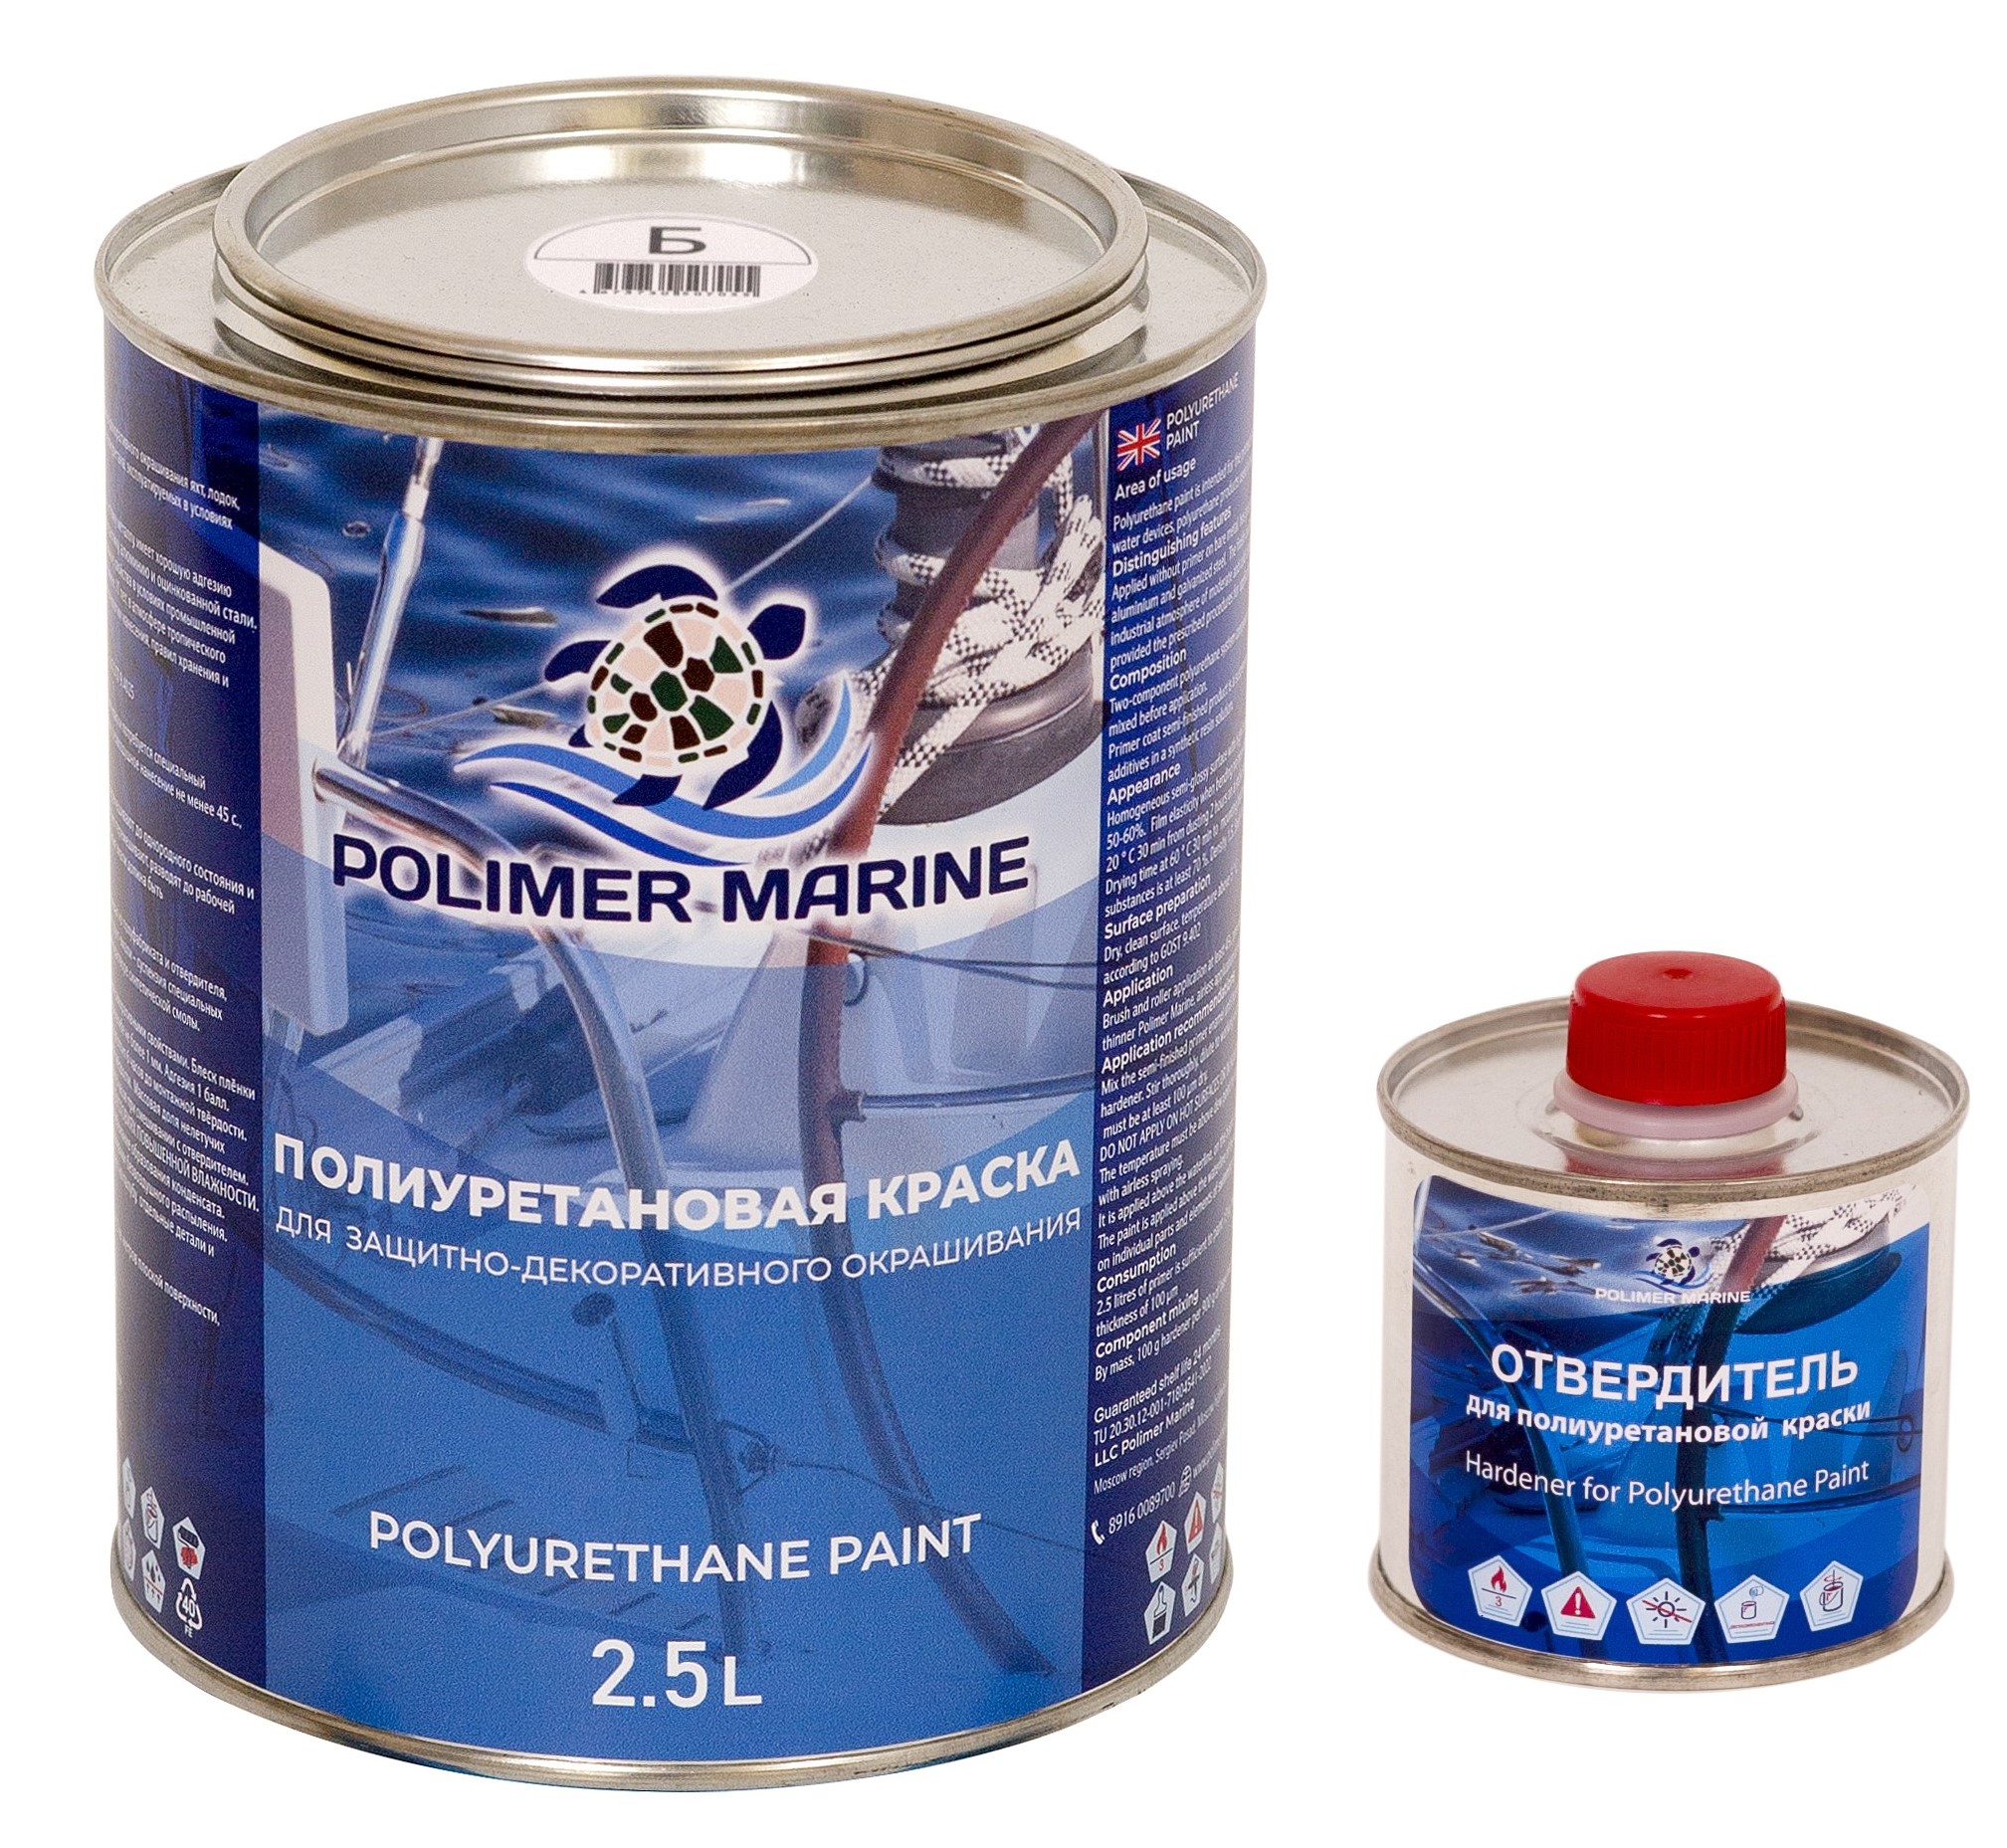 Полиуретановая краска Polimer Marine КП Кп25б белая 2.5 л двухкомпонентная 2К полиуретановая краска polimer marine